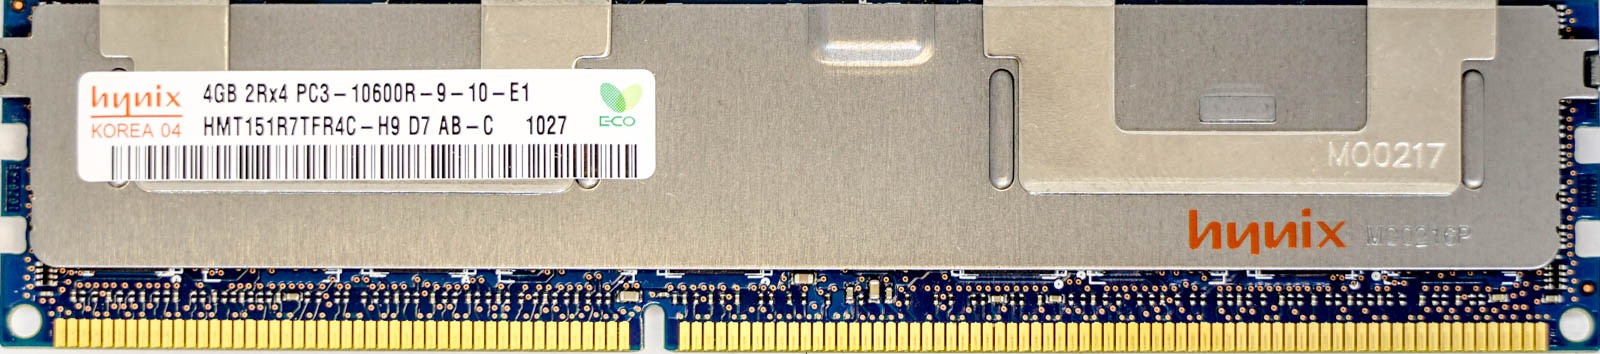 Hynix - 4GB PC3-10600R (DDR3-1333Mhz, 2RX4)